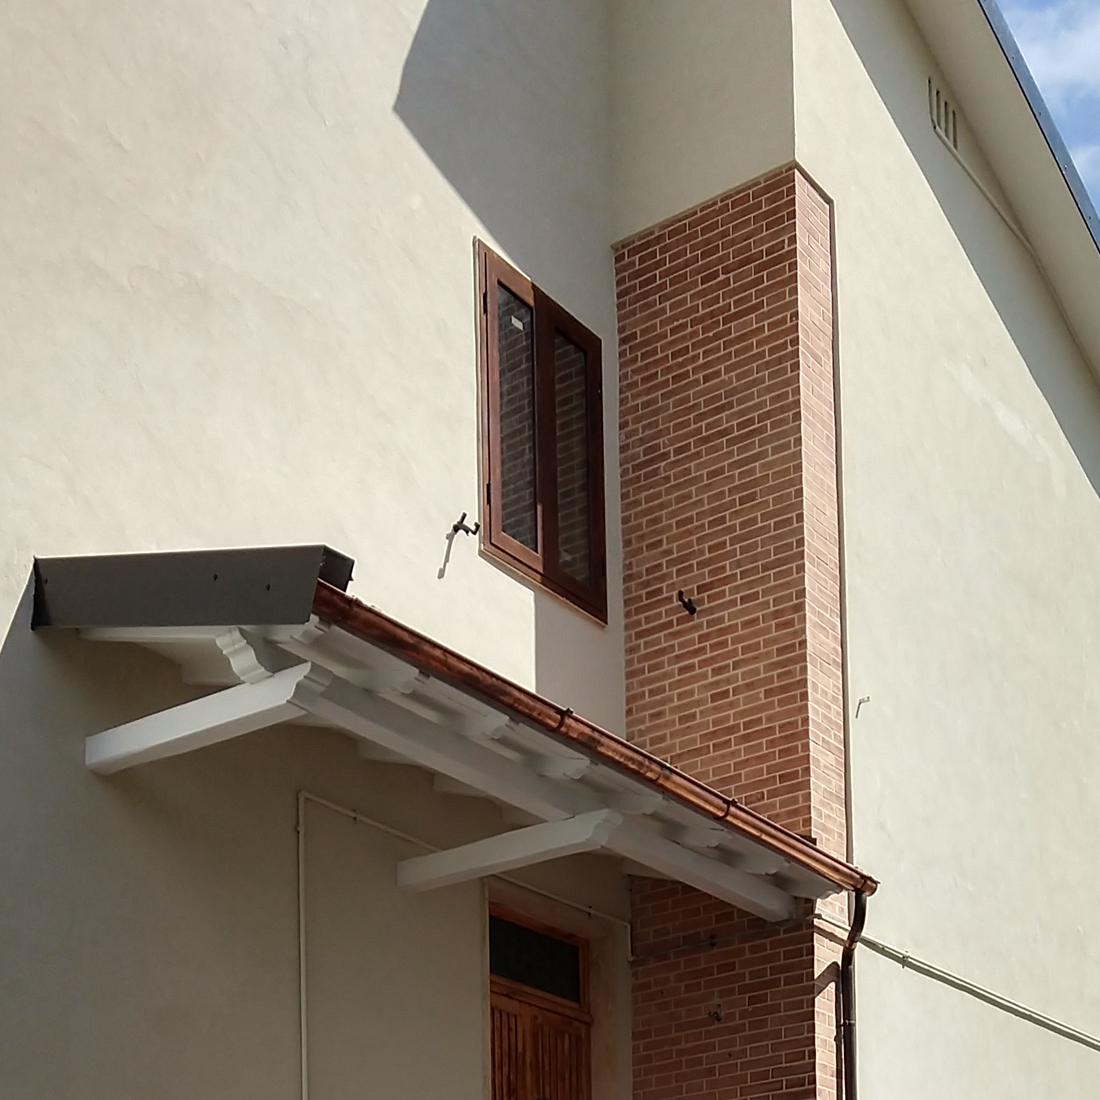 Применение БРОНЯ Фасад НГ на целой улице коттеджей в г. Поджибонси, Италия по гос. программе 110% (фото, видео)